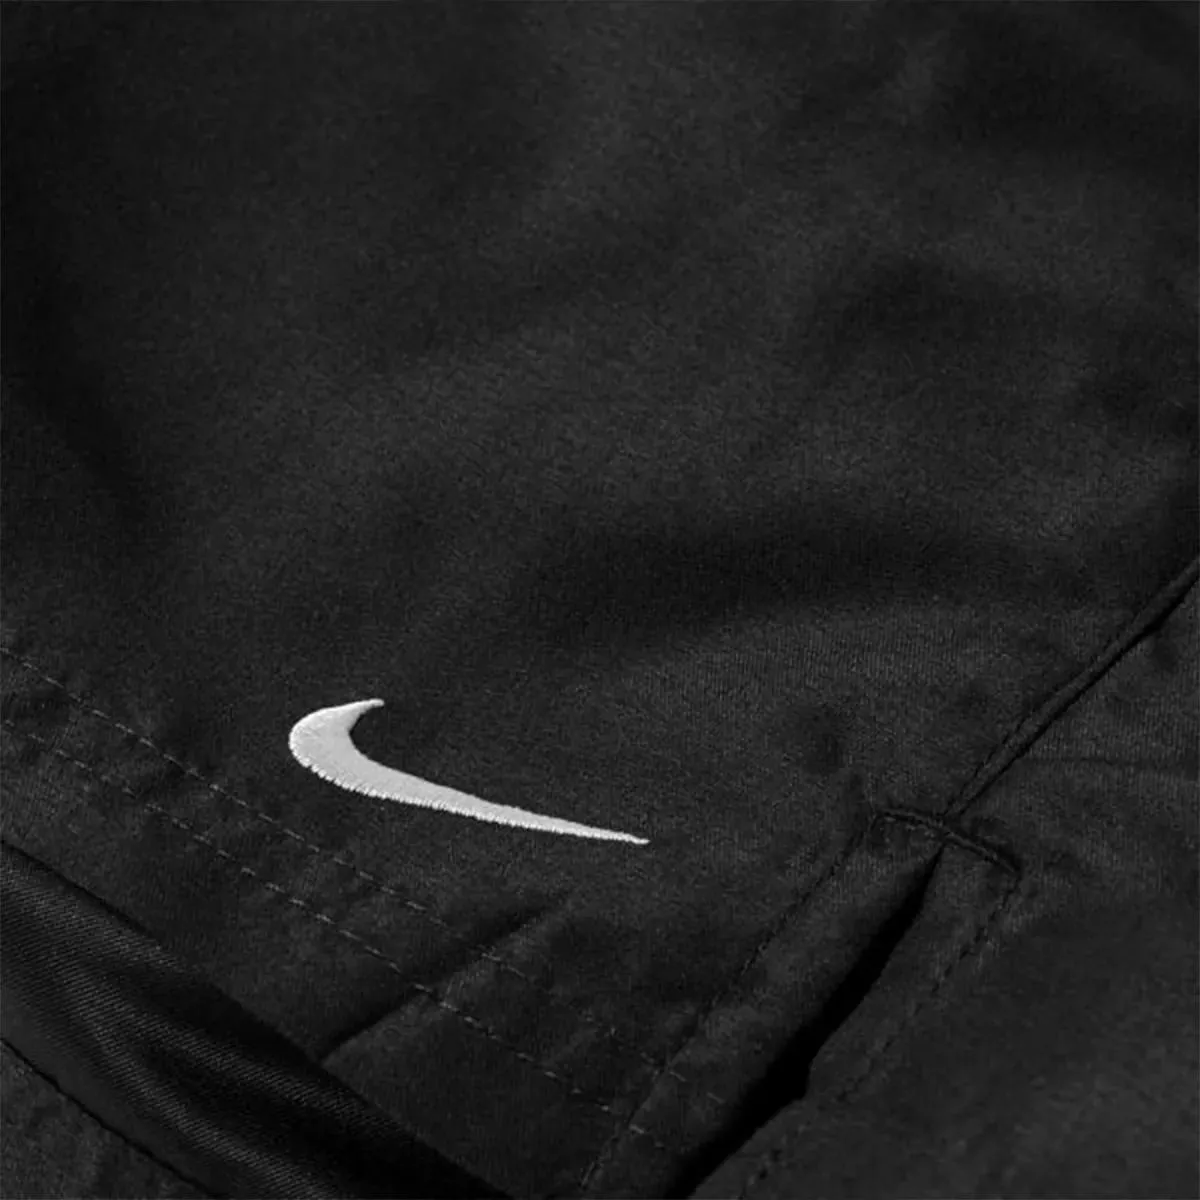 Nike 5